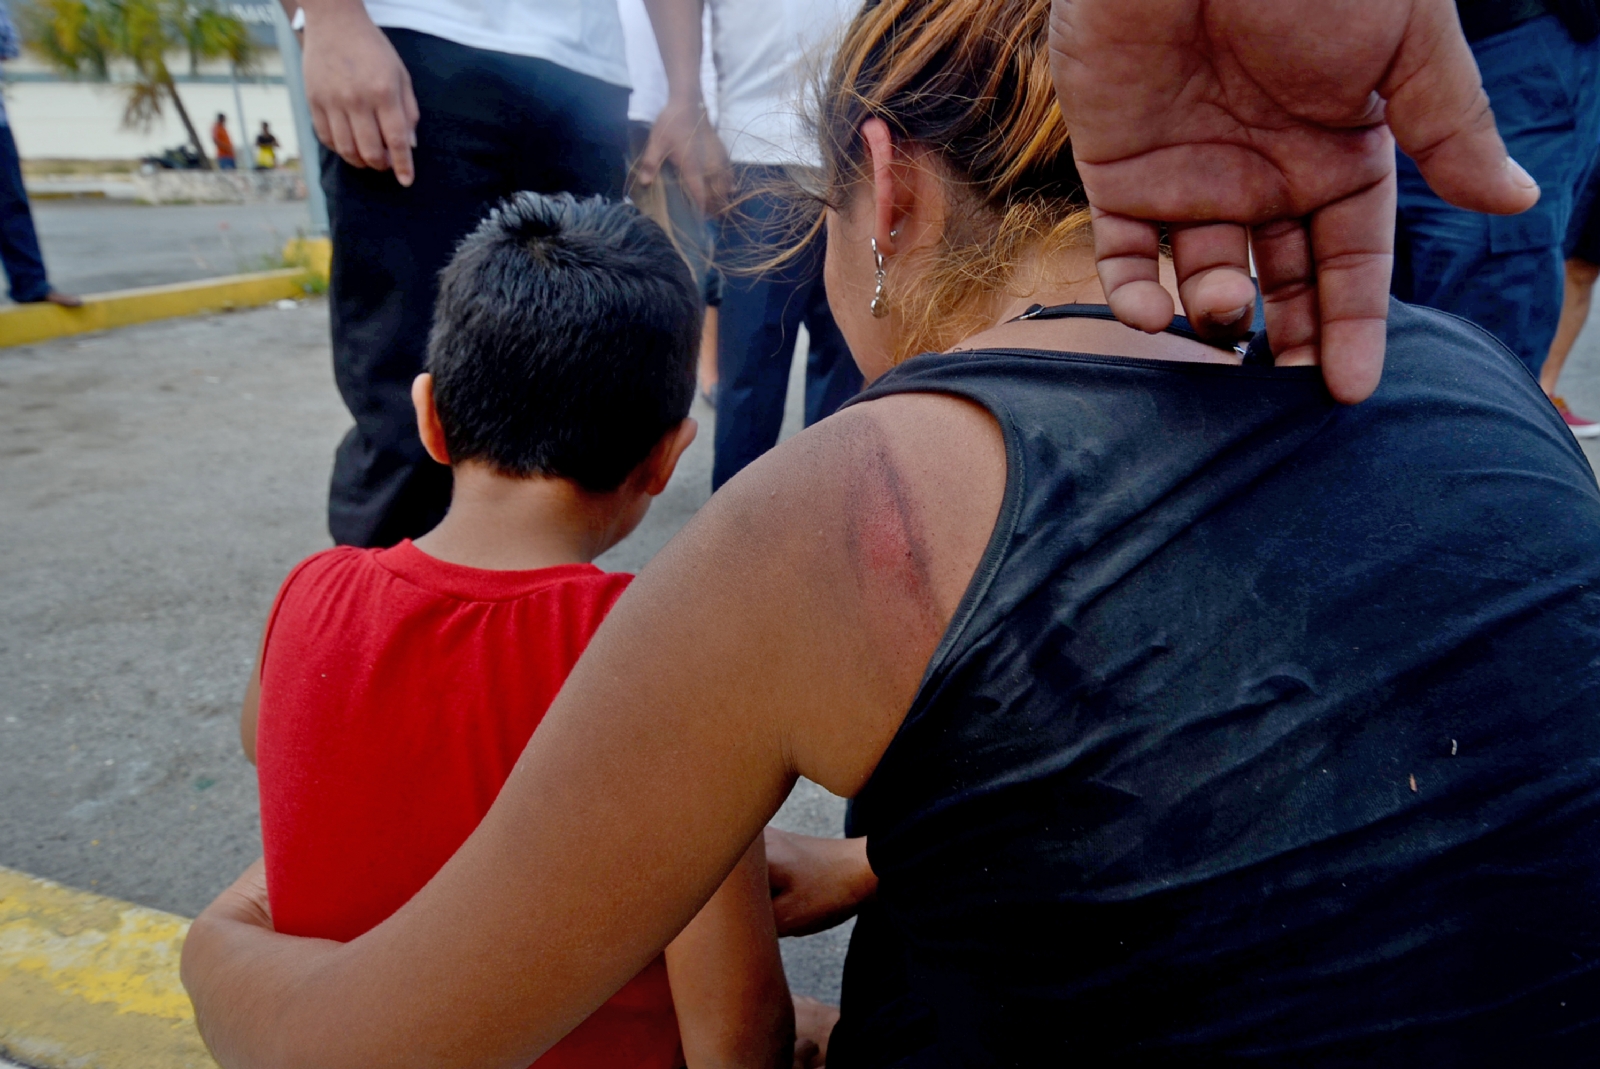 Las víctimas de violencia en Playa del Carmen evitan dejar a sus parejas a pesar de los maltratos psicológicos o físicos que sufren